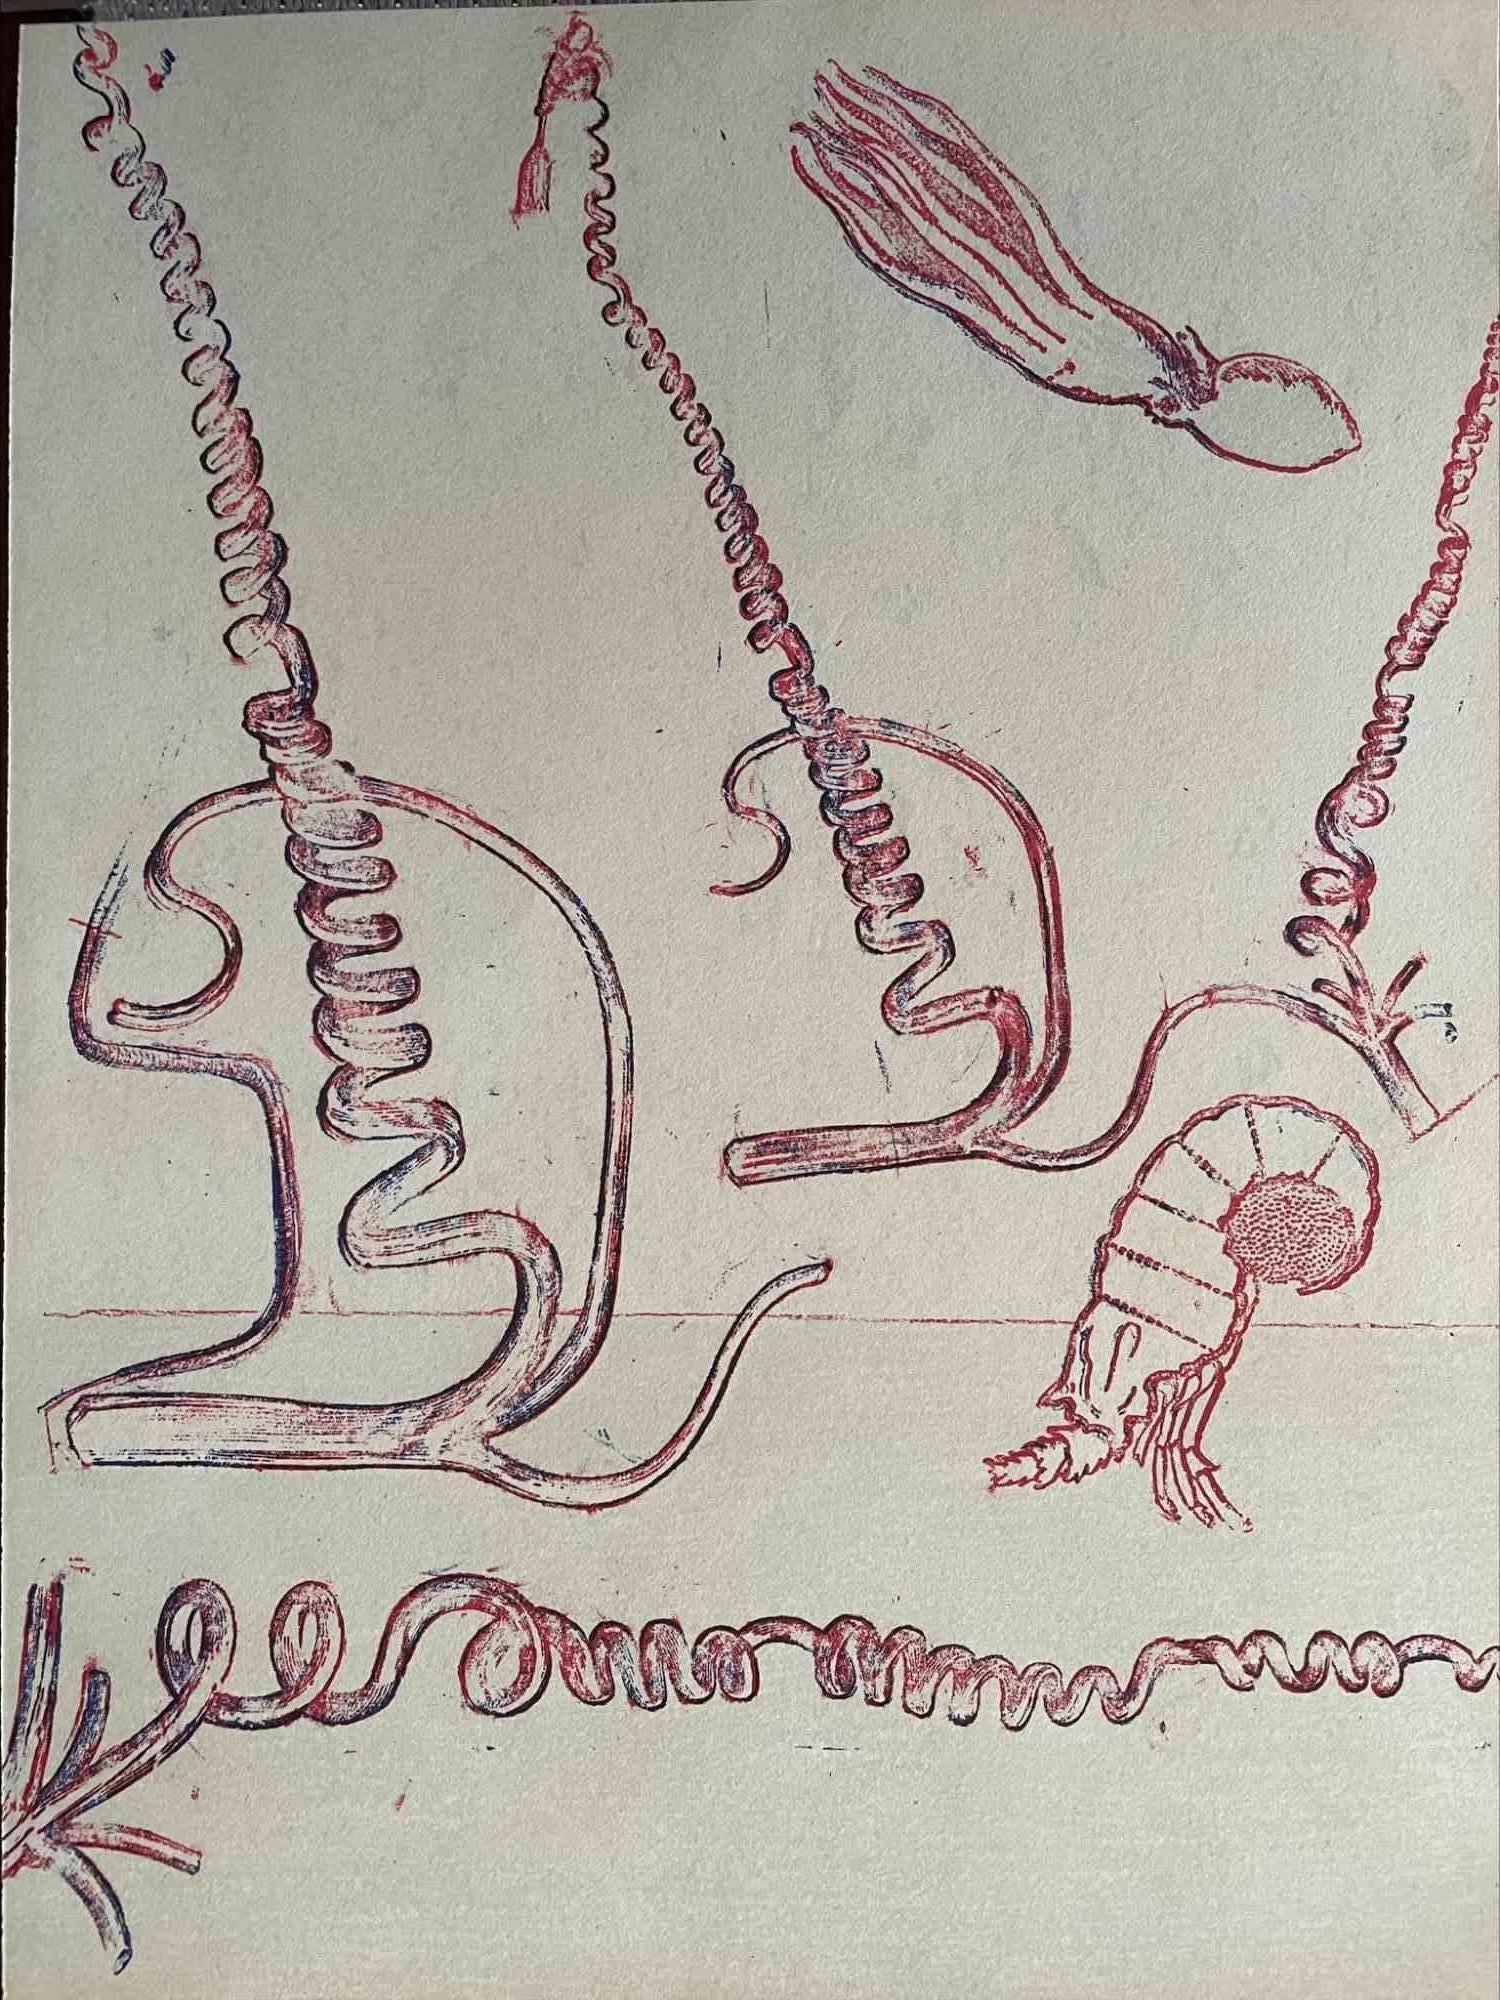 Pink Composition ist ein Kunstwerk von Max Ernst aus dem Jahr 1974.

Farbige Original-Lithographie.

Gute Bedingungen. Gedruckt im Atelier Pierre Chave in Vence, Frankreich.

Diese Lithographie wurde vom Künstler 1974 für die éditions XXe Siècle -